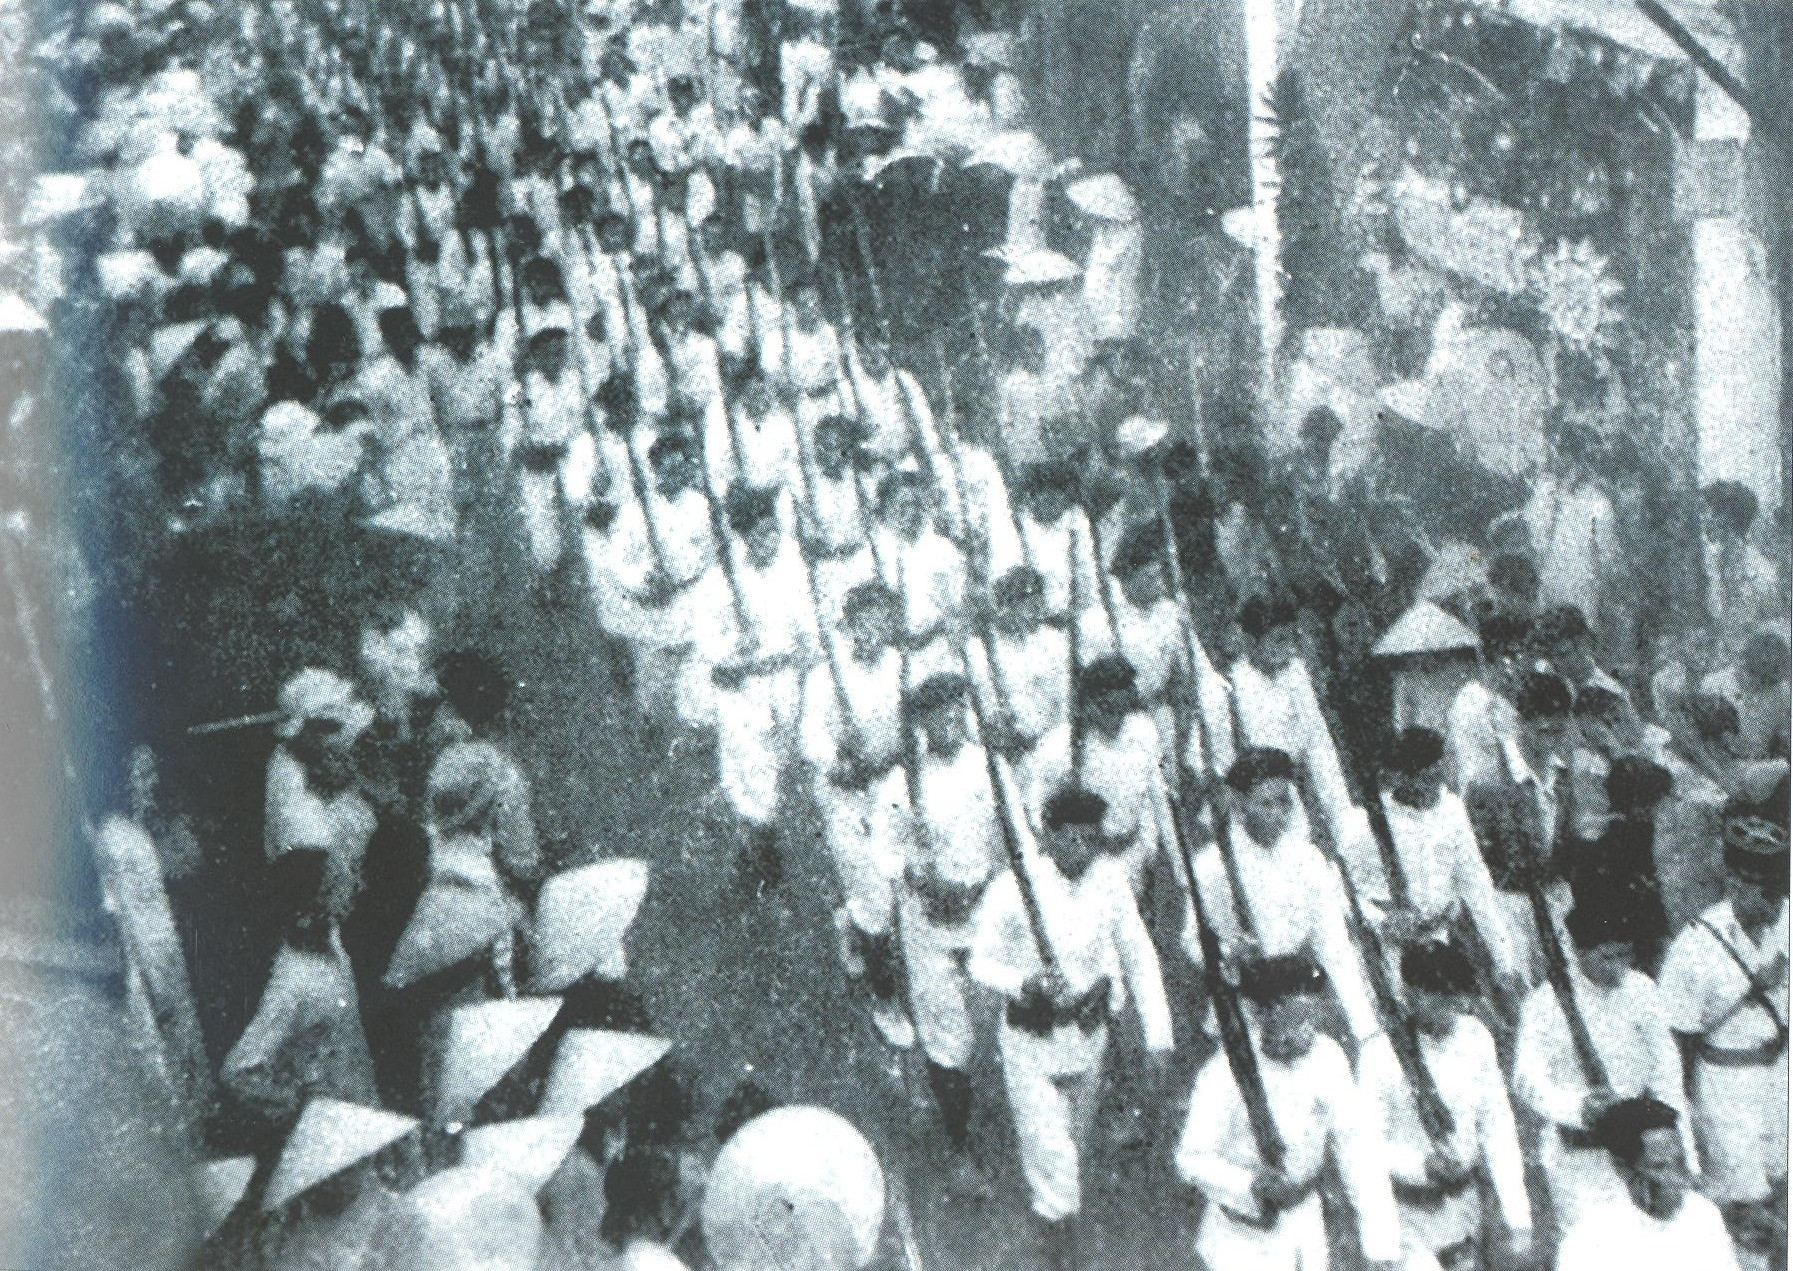 Lực lượng Bảo an của địch sau khi làm binh biến và tham gia khởi nghĩa đã cùng với nhân dân và lực lượng vũ trang cách mạng diễu hành trong lễ ra mắt Ủy ban nhân dân cách mạng lâm thời tỉnh Quảng Nam tại Hội An (25.8.1945). Ảnh tư liệu